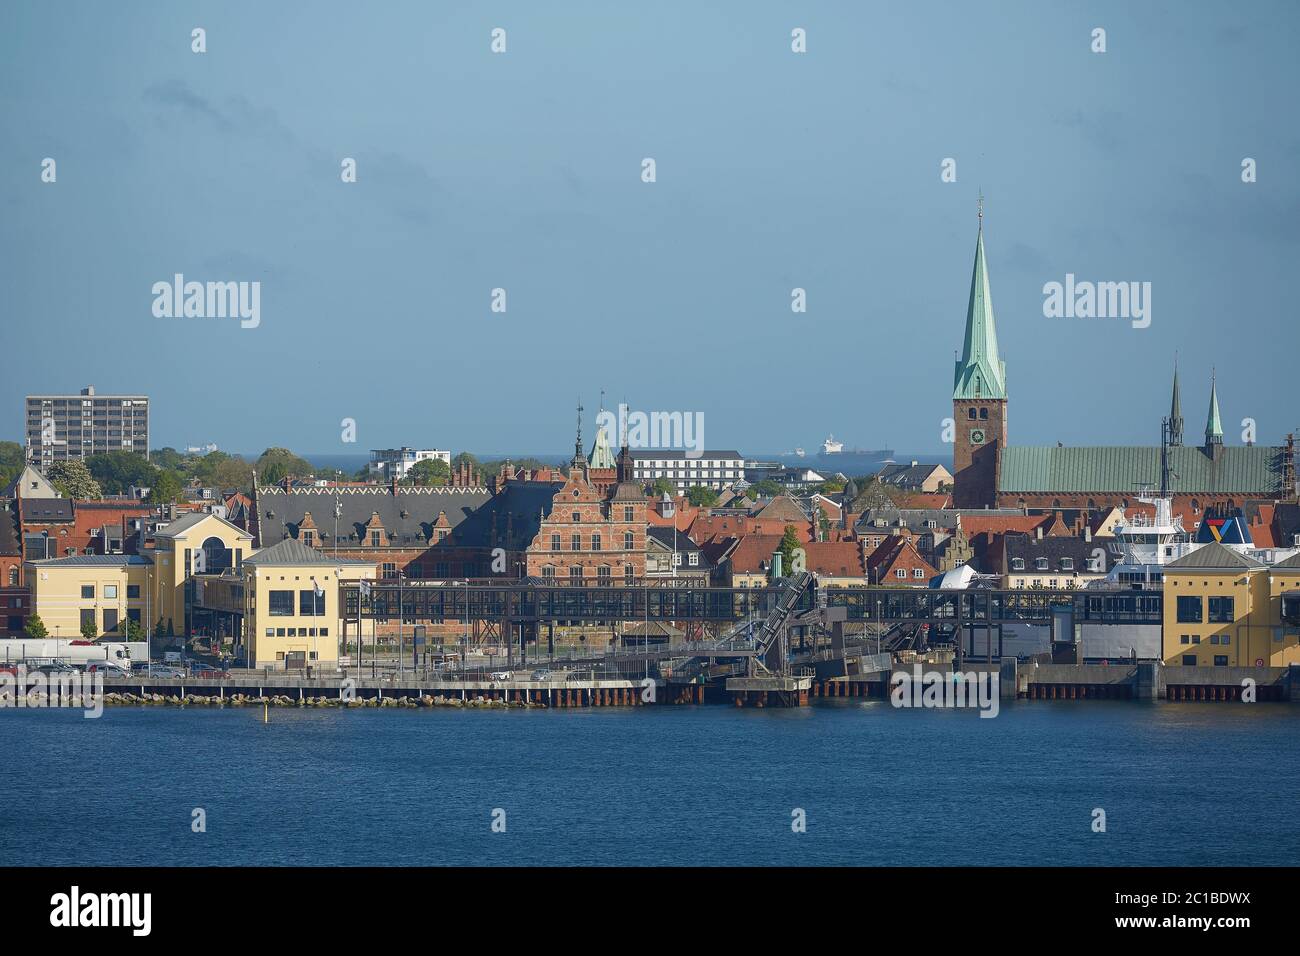 Vista de Helsingor o Elsinore del estrecho de Oresund en Dinamarca Foto de stock